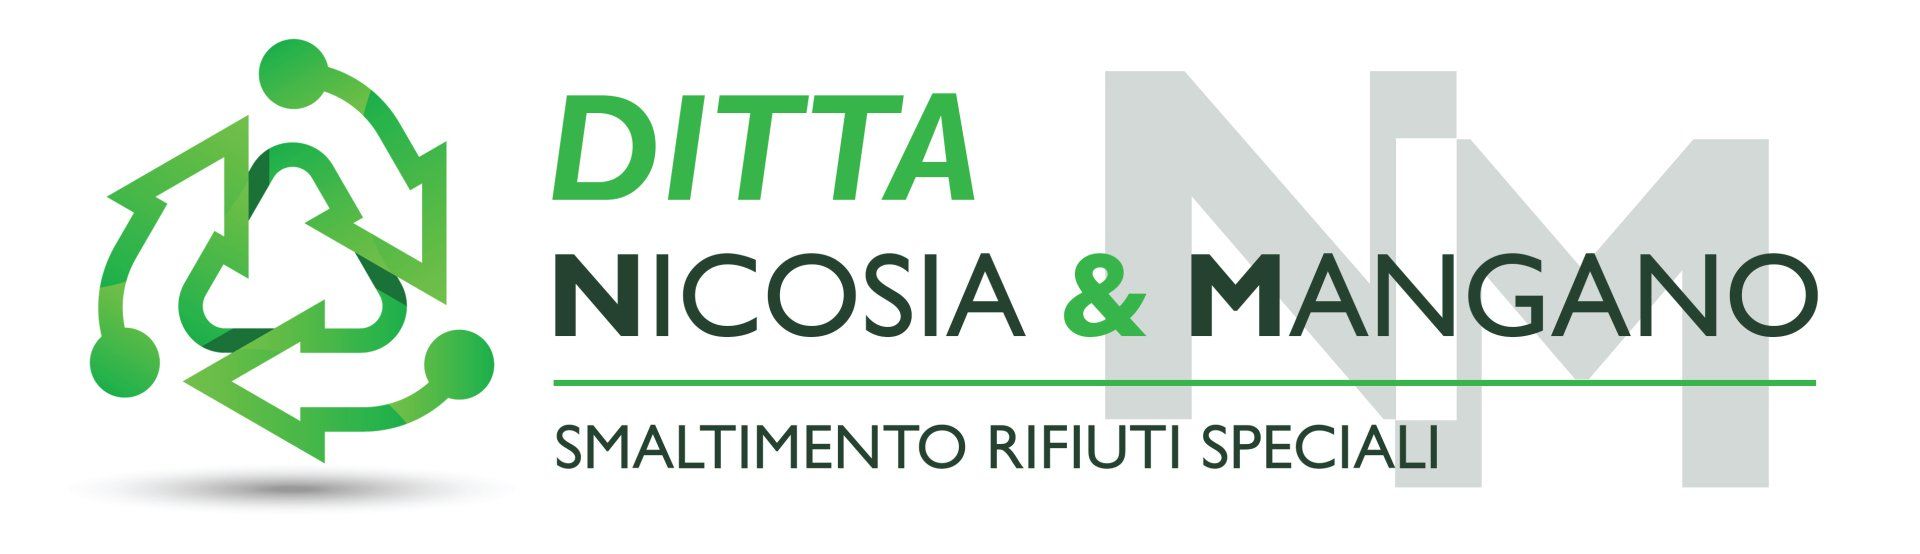 Ditta Nicosia & Mangano Logo